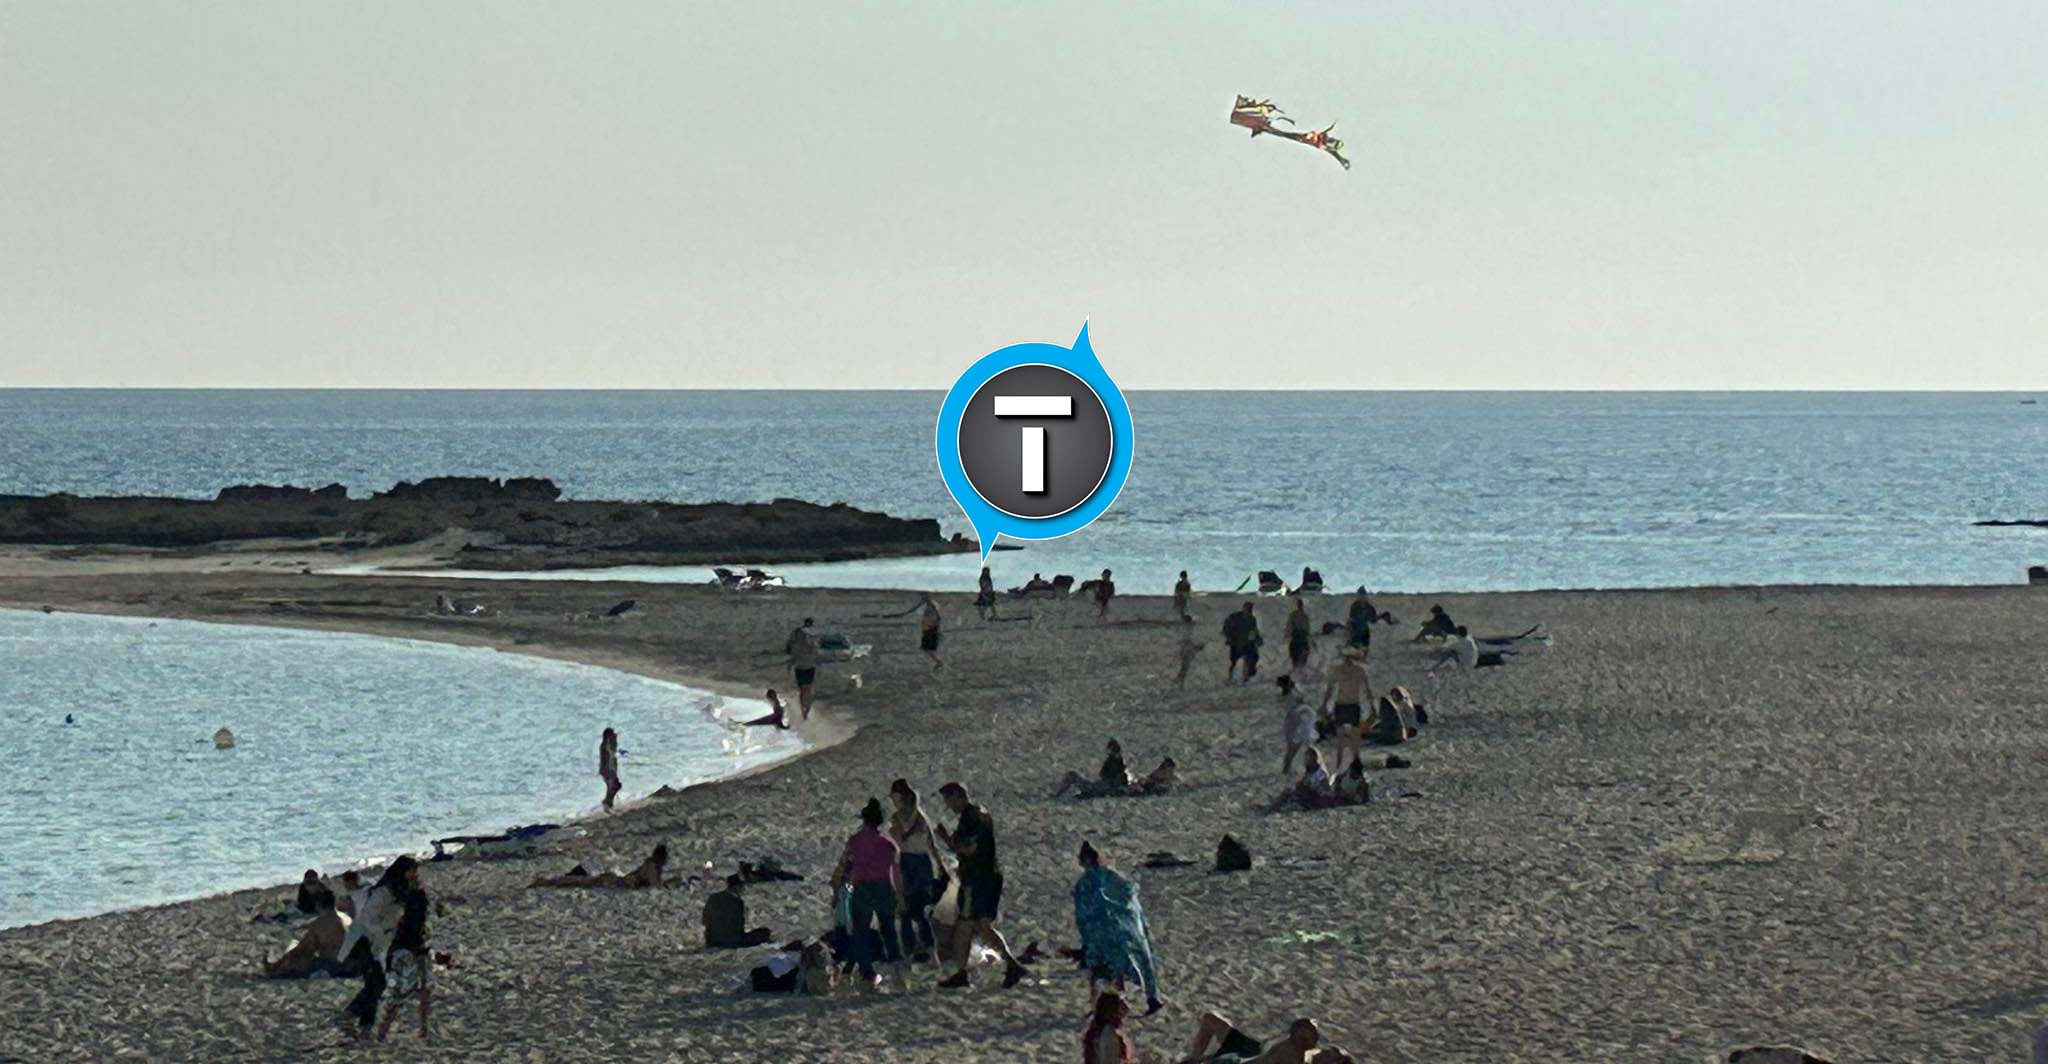 Ήρθε το... καλοκαίρι στην Αγία Νάπα - Πέταξαν χαρταετό στην παραλία -Δείτε φωτογραφίες